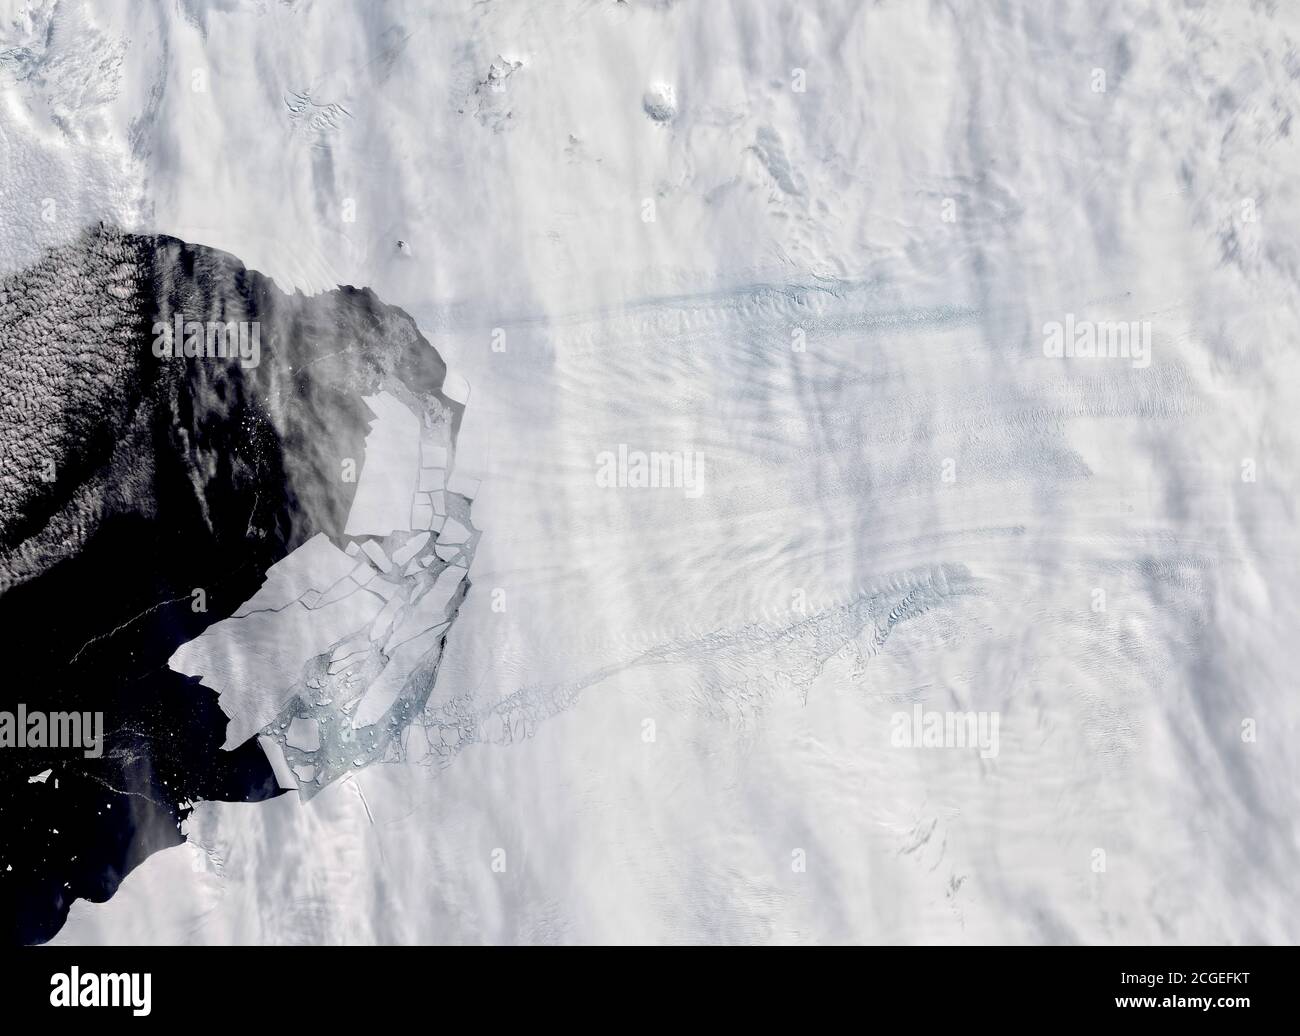 Il ghiacciaio Pine Island dell'Antartide ha prodotto nuovi iceberg nel febbraio 2020. L'immagine mostra il ghiacciaio e numerosi iceberg che si staccano dal ghiacciaio e f Foto Stock